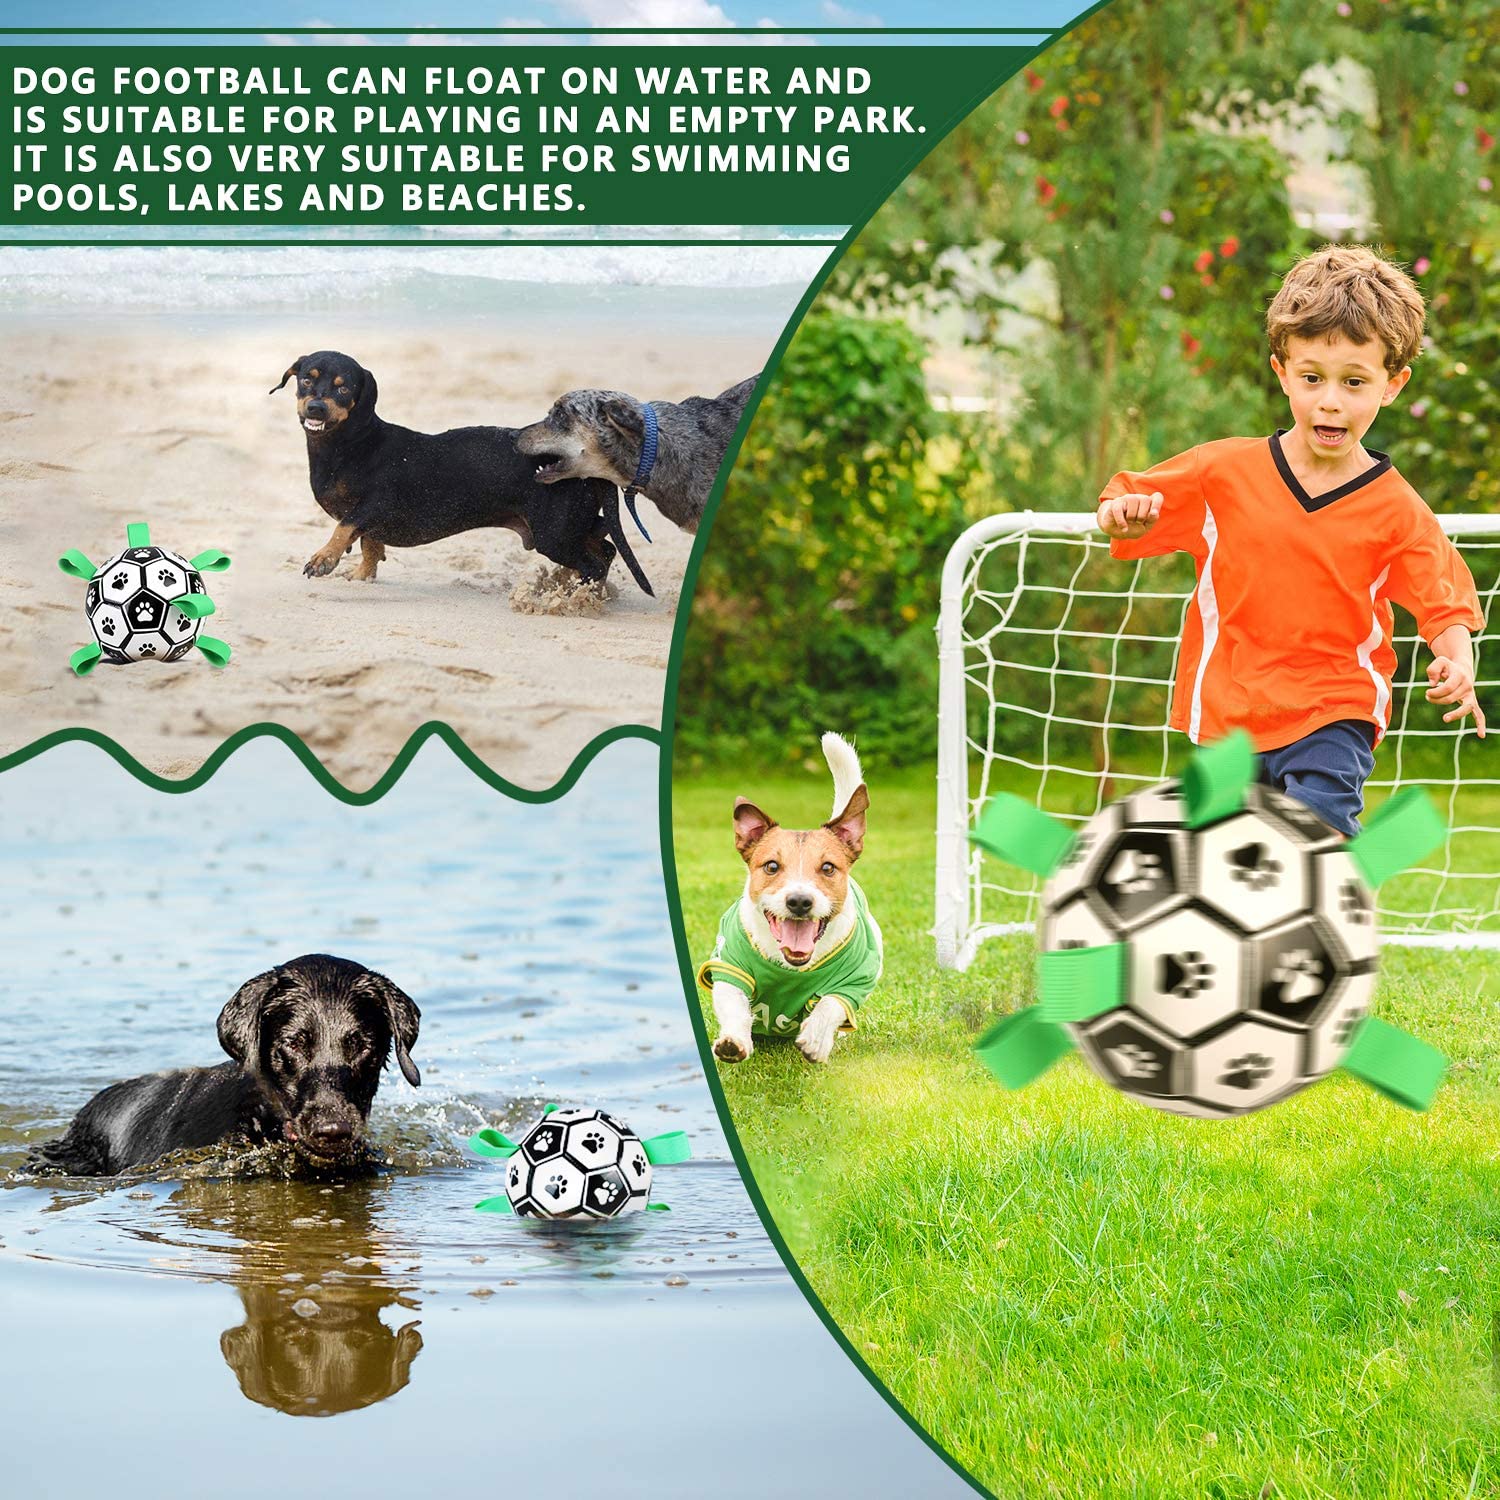 Interaktives Hundespielzeug - Fußball für Haustiere mit Grifflaschen